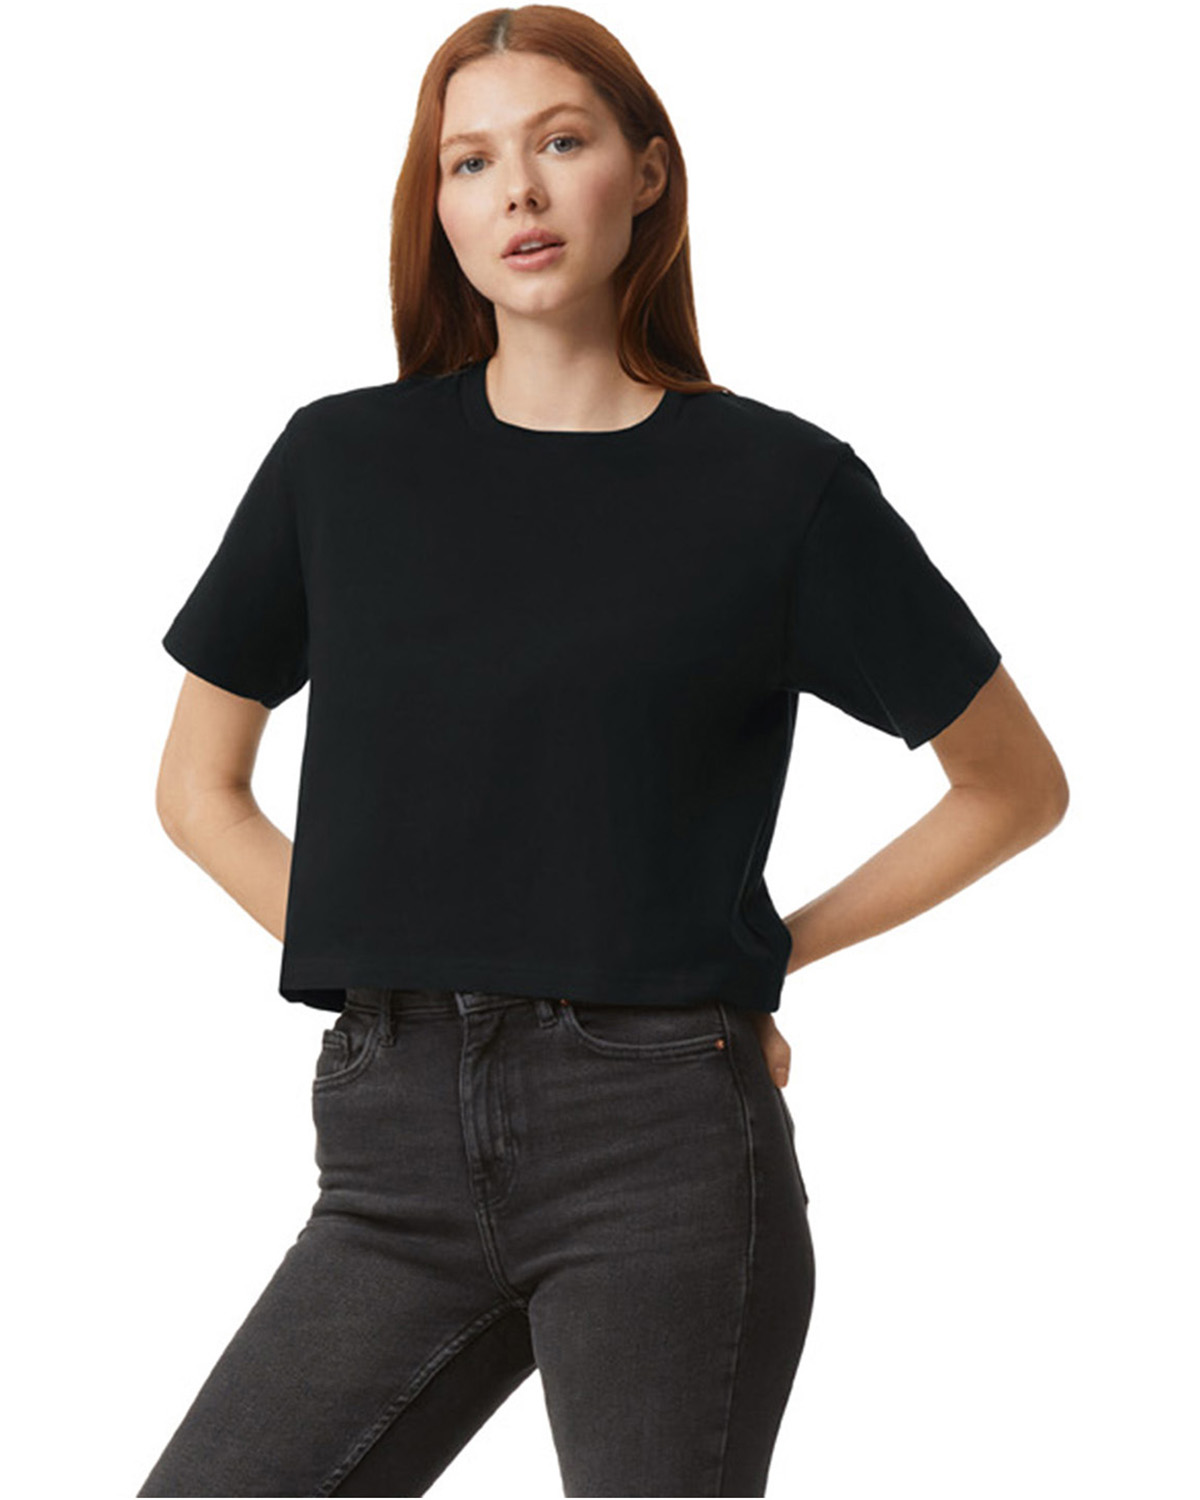 American Apparel 102 Shirts Jersey Am T Shirt Jiffy | Boxy Fine Ladies